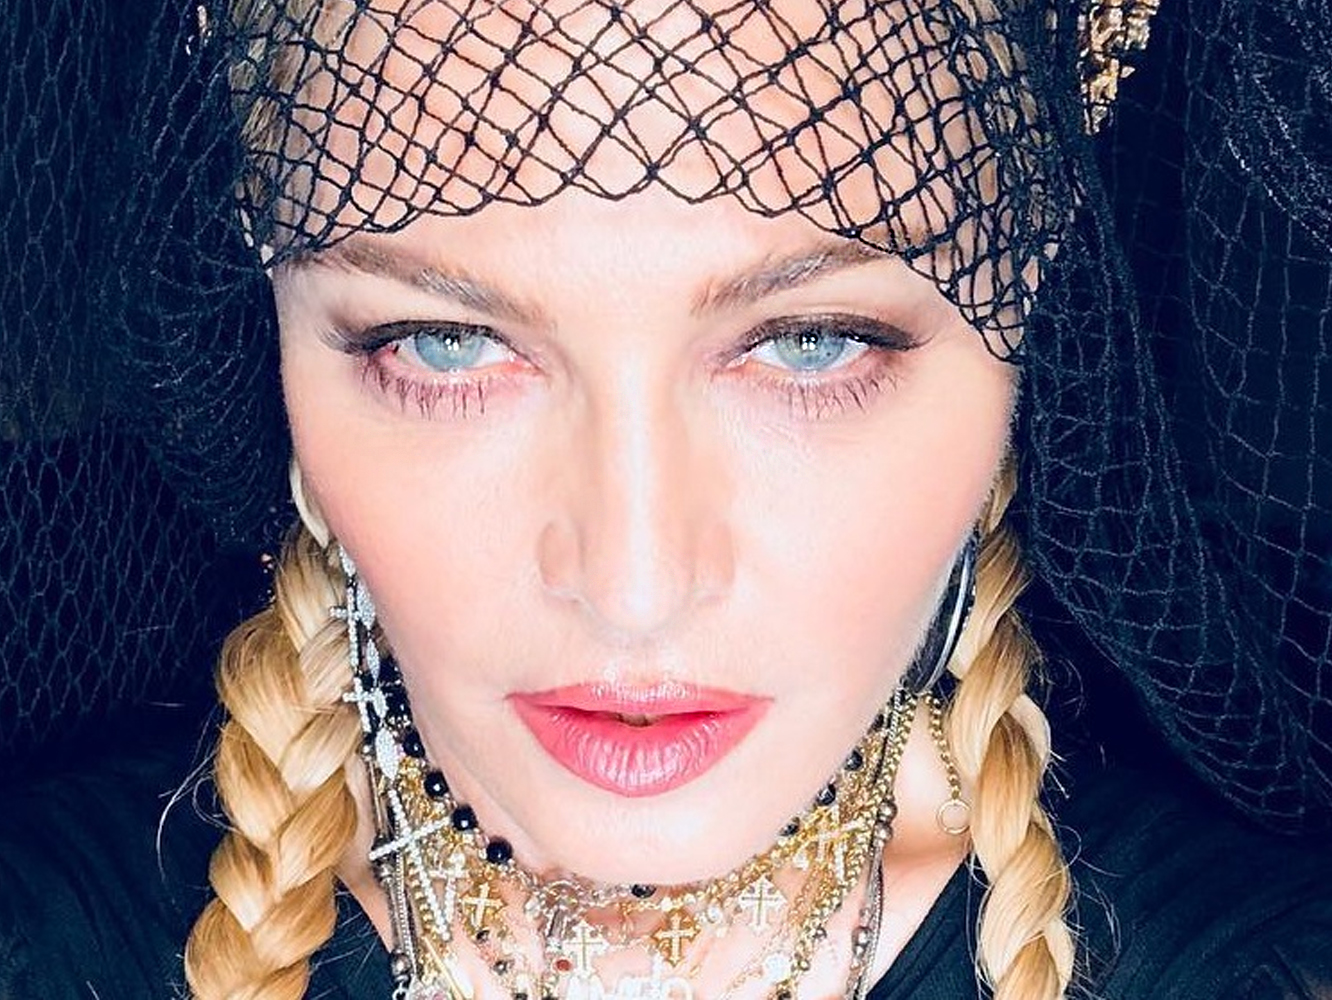  Madonna quería lanzar ‘Beautiful Game’, pero la frenaron: ¿se avecina un nuevo ‘Rebel Heart’?